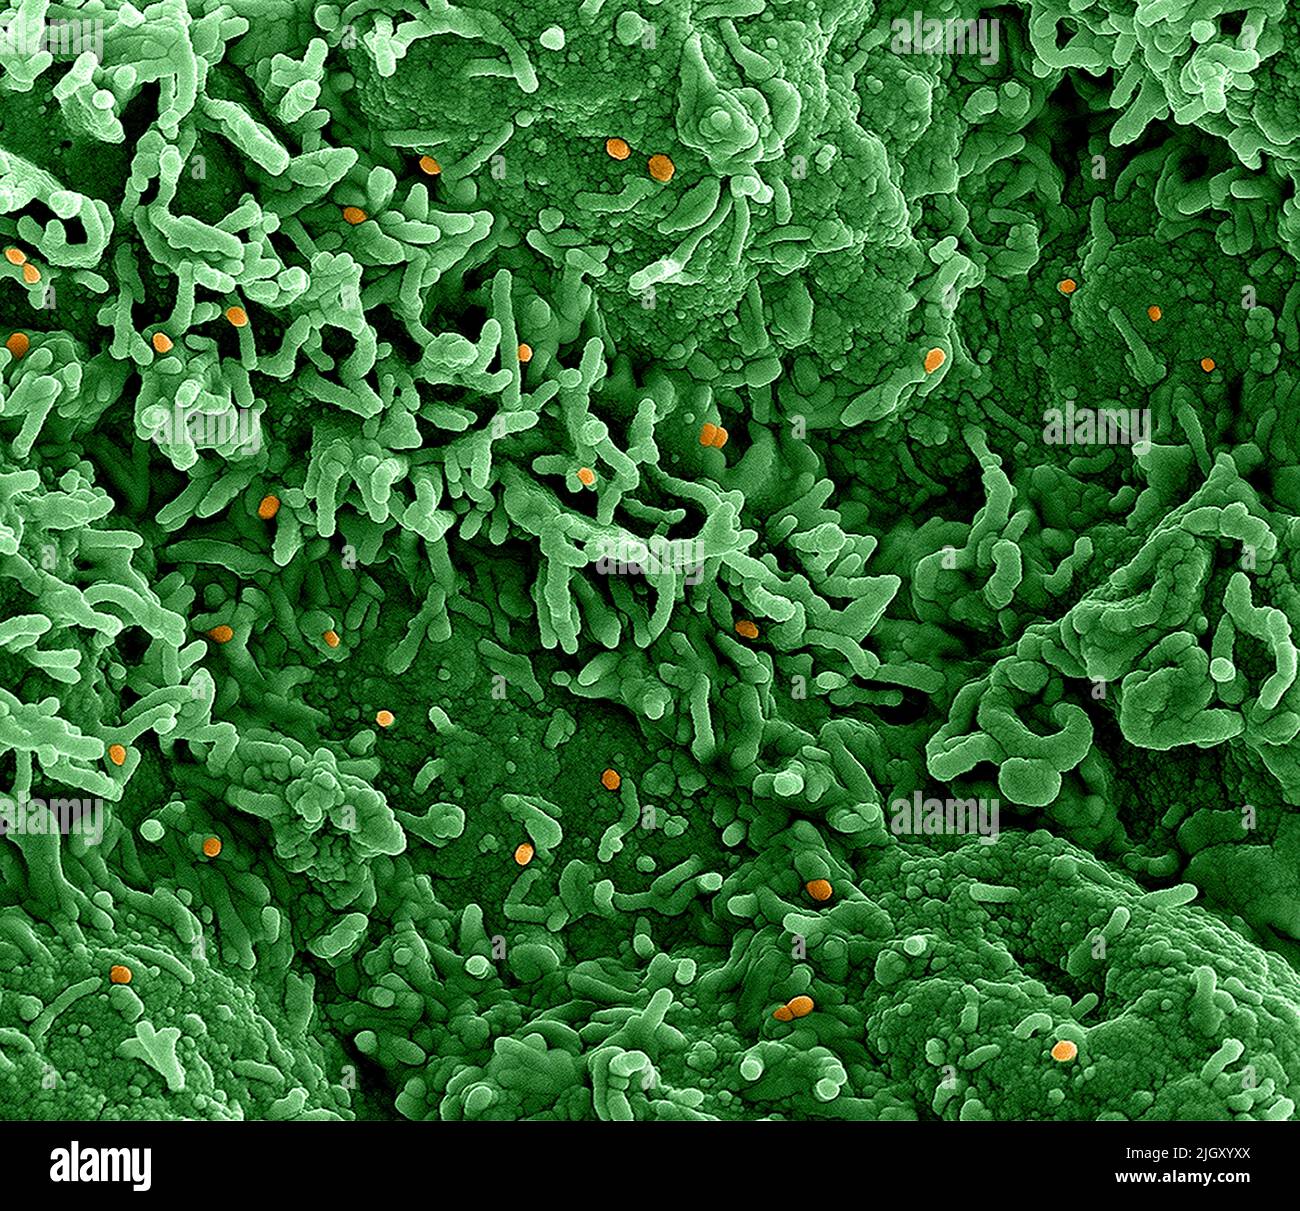 Viruela del simio. Micrografía electrónica de transmisión coloreada de partículas maduras del virus Nipah extracelular (rojo) cerca de la periferia de una célula VERO infectada (azul y verde). Imagen capturada en la Instalación Integrada de Investigación NIAID en Fort Detrick, Maryland. NIAID La viruela del simio es una enfermedad viral infecciosa que puede ocurrir en los seres humanos y en algunos otros animales.Los síntomas incluyen fiebre, ganglios linfáticos inflamados y una erupción que forma ampollas y luego costras. El tiempo transcurrido desde la exposición hasta el inicio de los síntomas varía de 5 a 21 días. La duración de los síntomas suele ser de 2 a 4 semanas. Foto de stock